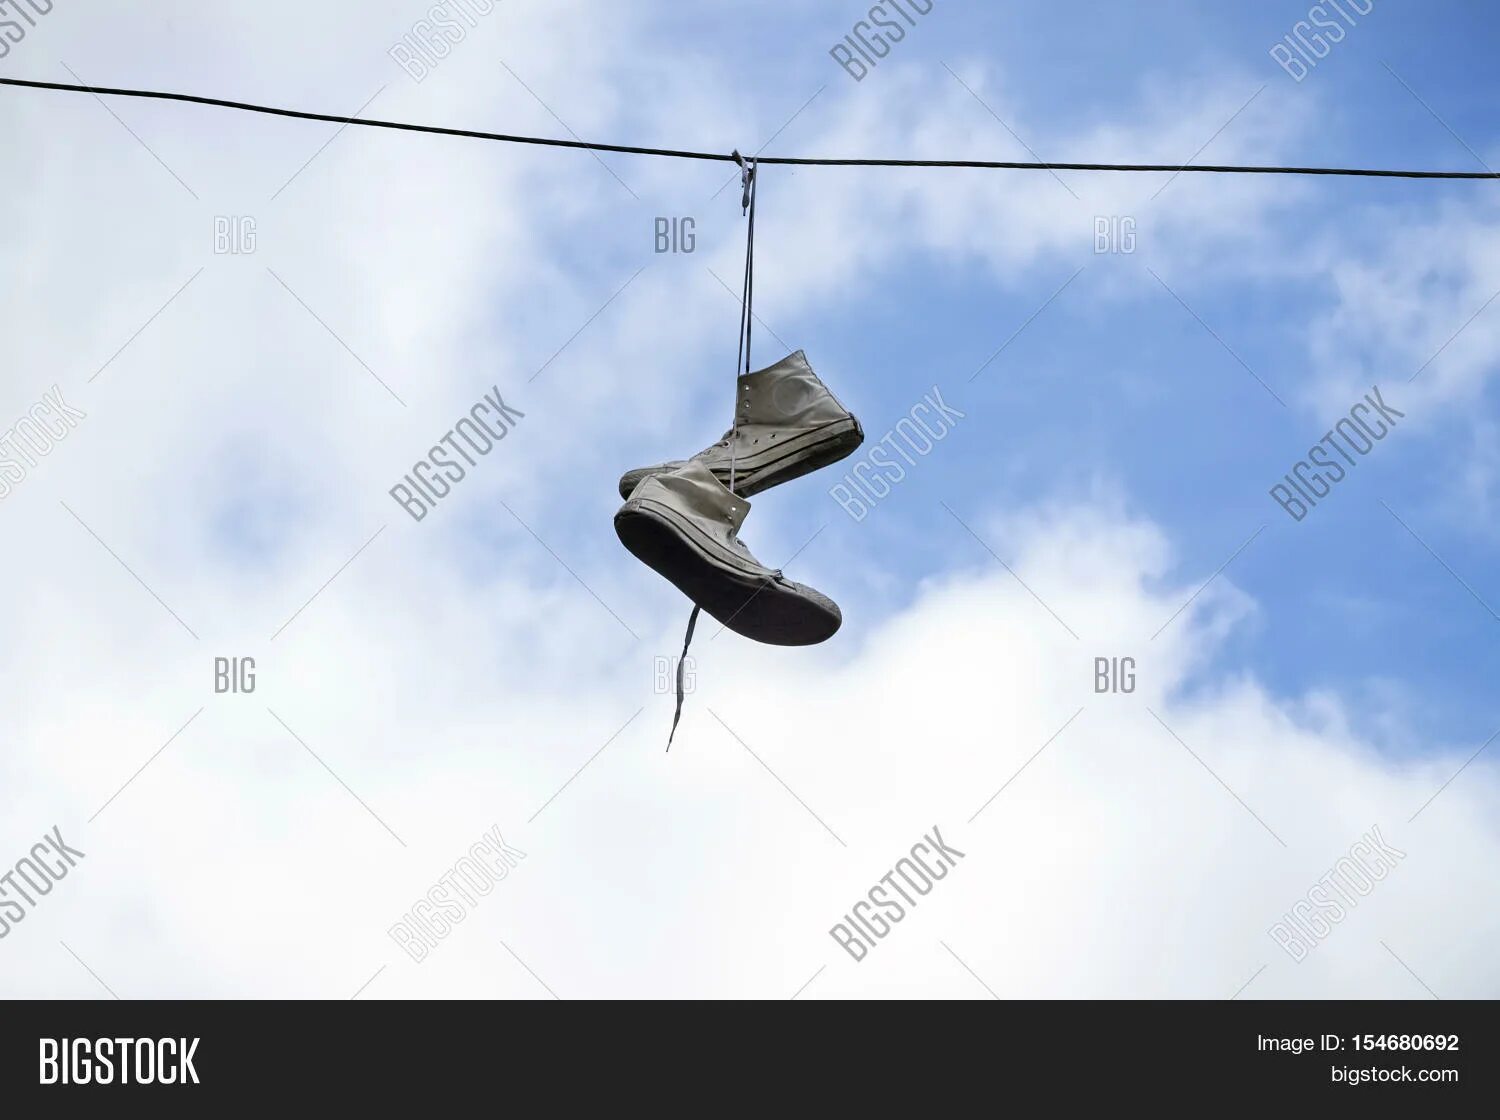 Что значат обувь на проводах. Висячие кроссовки на проводах. Кеды висят на проводах. Кроссовки на электрических проводах. Летающие тапочки.